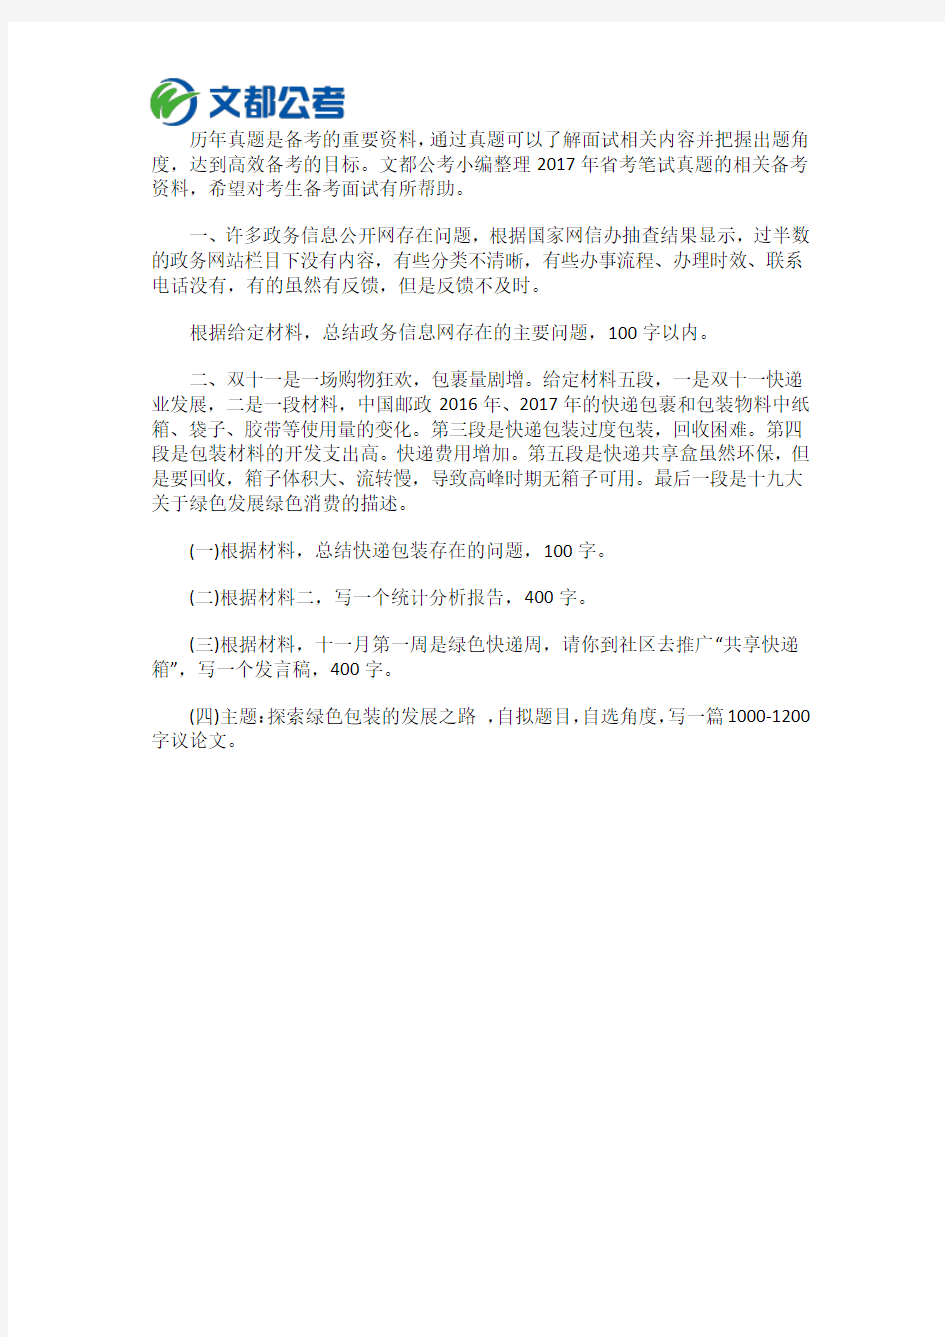 2017年重庆市统计局遴选公务员招聘笔试真题(11月19日)